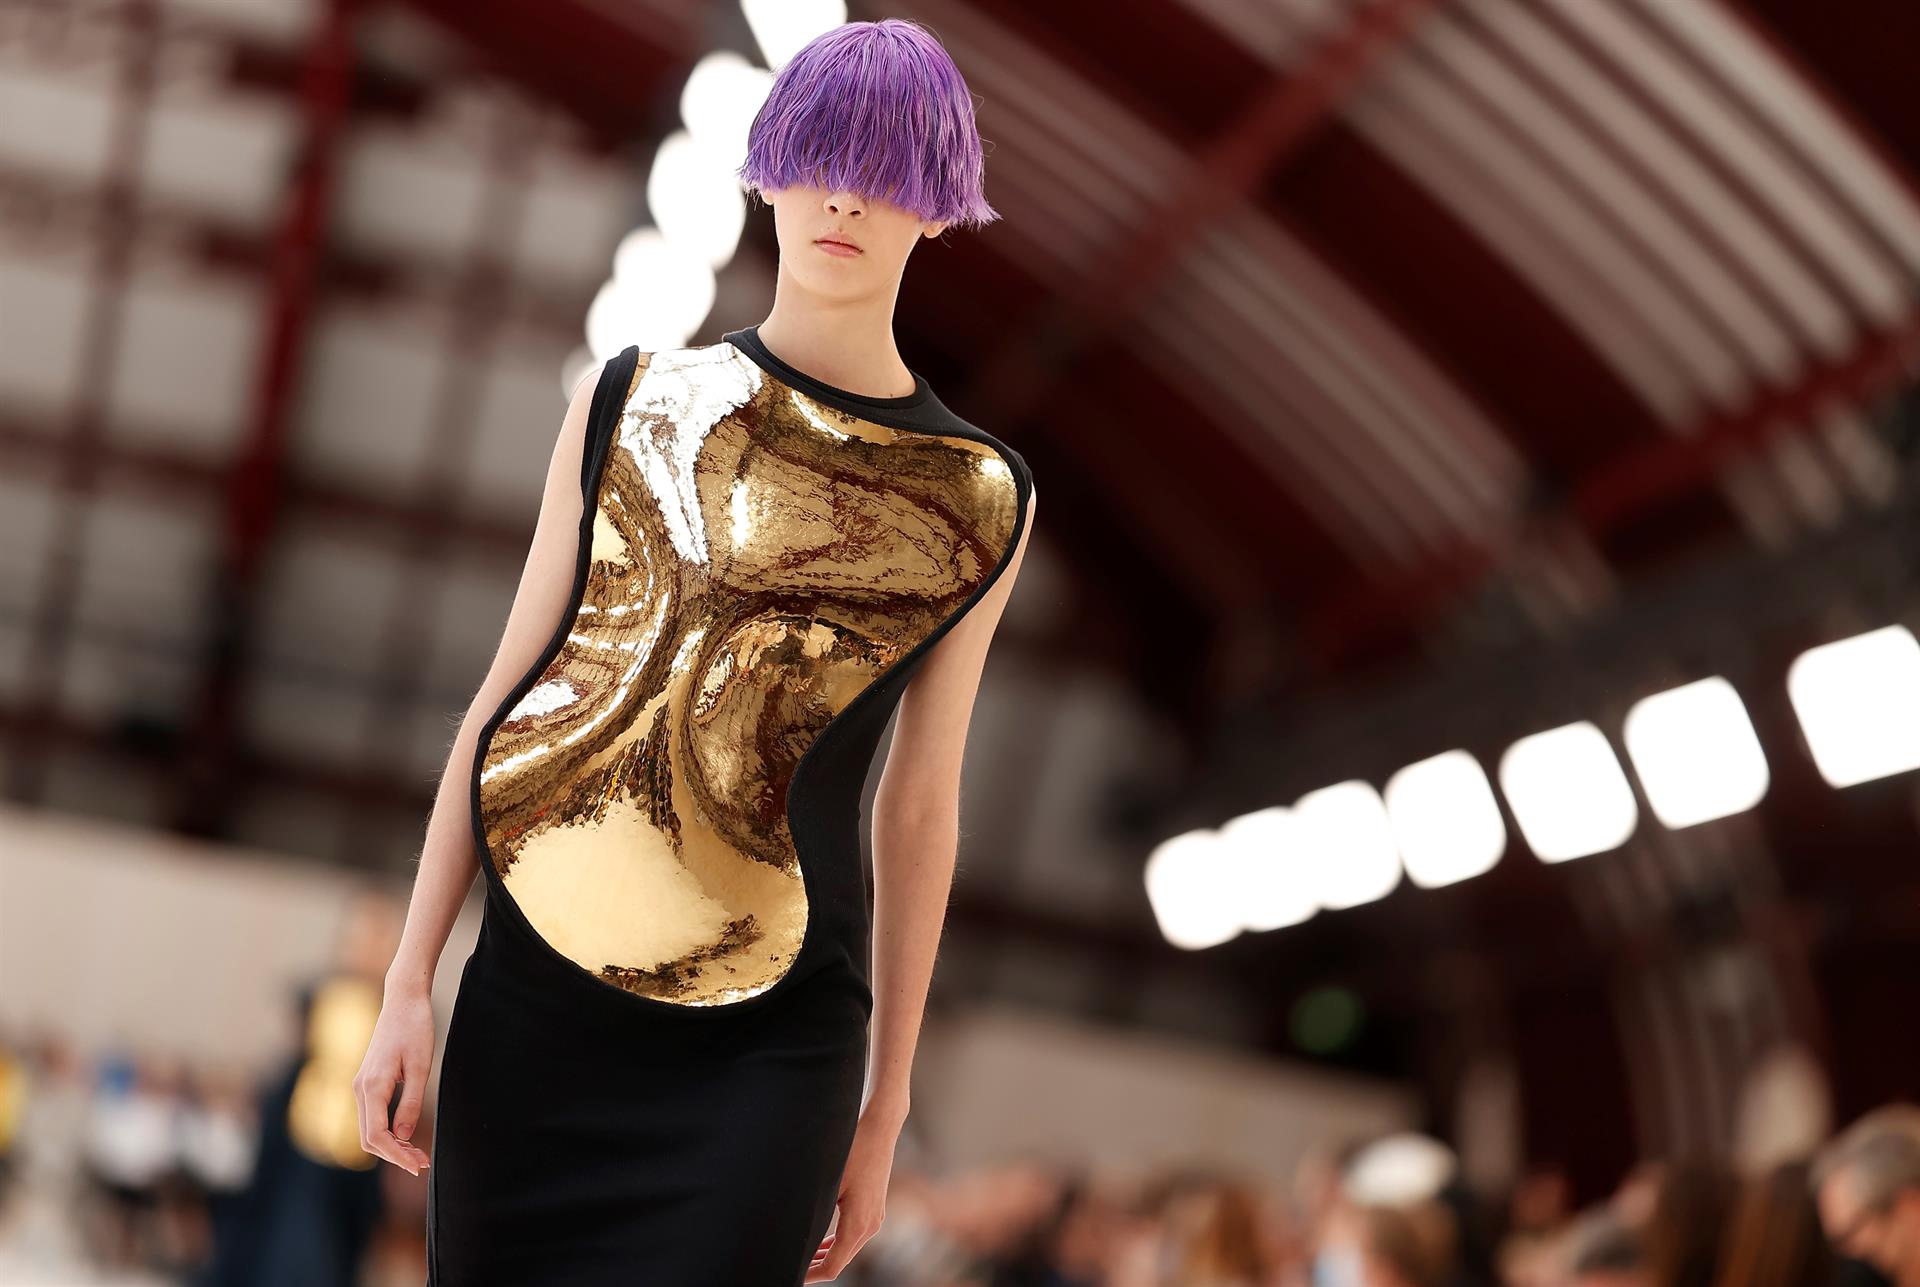 Así está influyendo el surrealismo en la semana de la moda en París